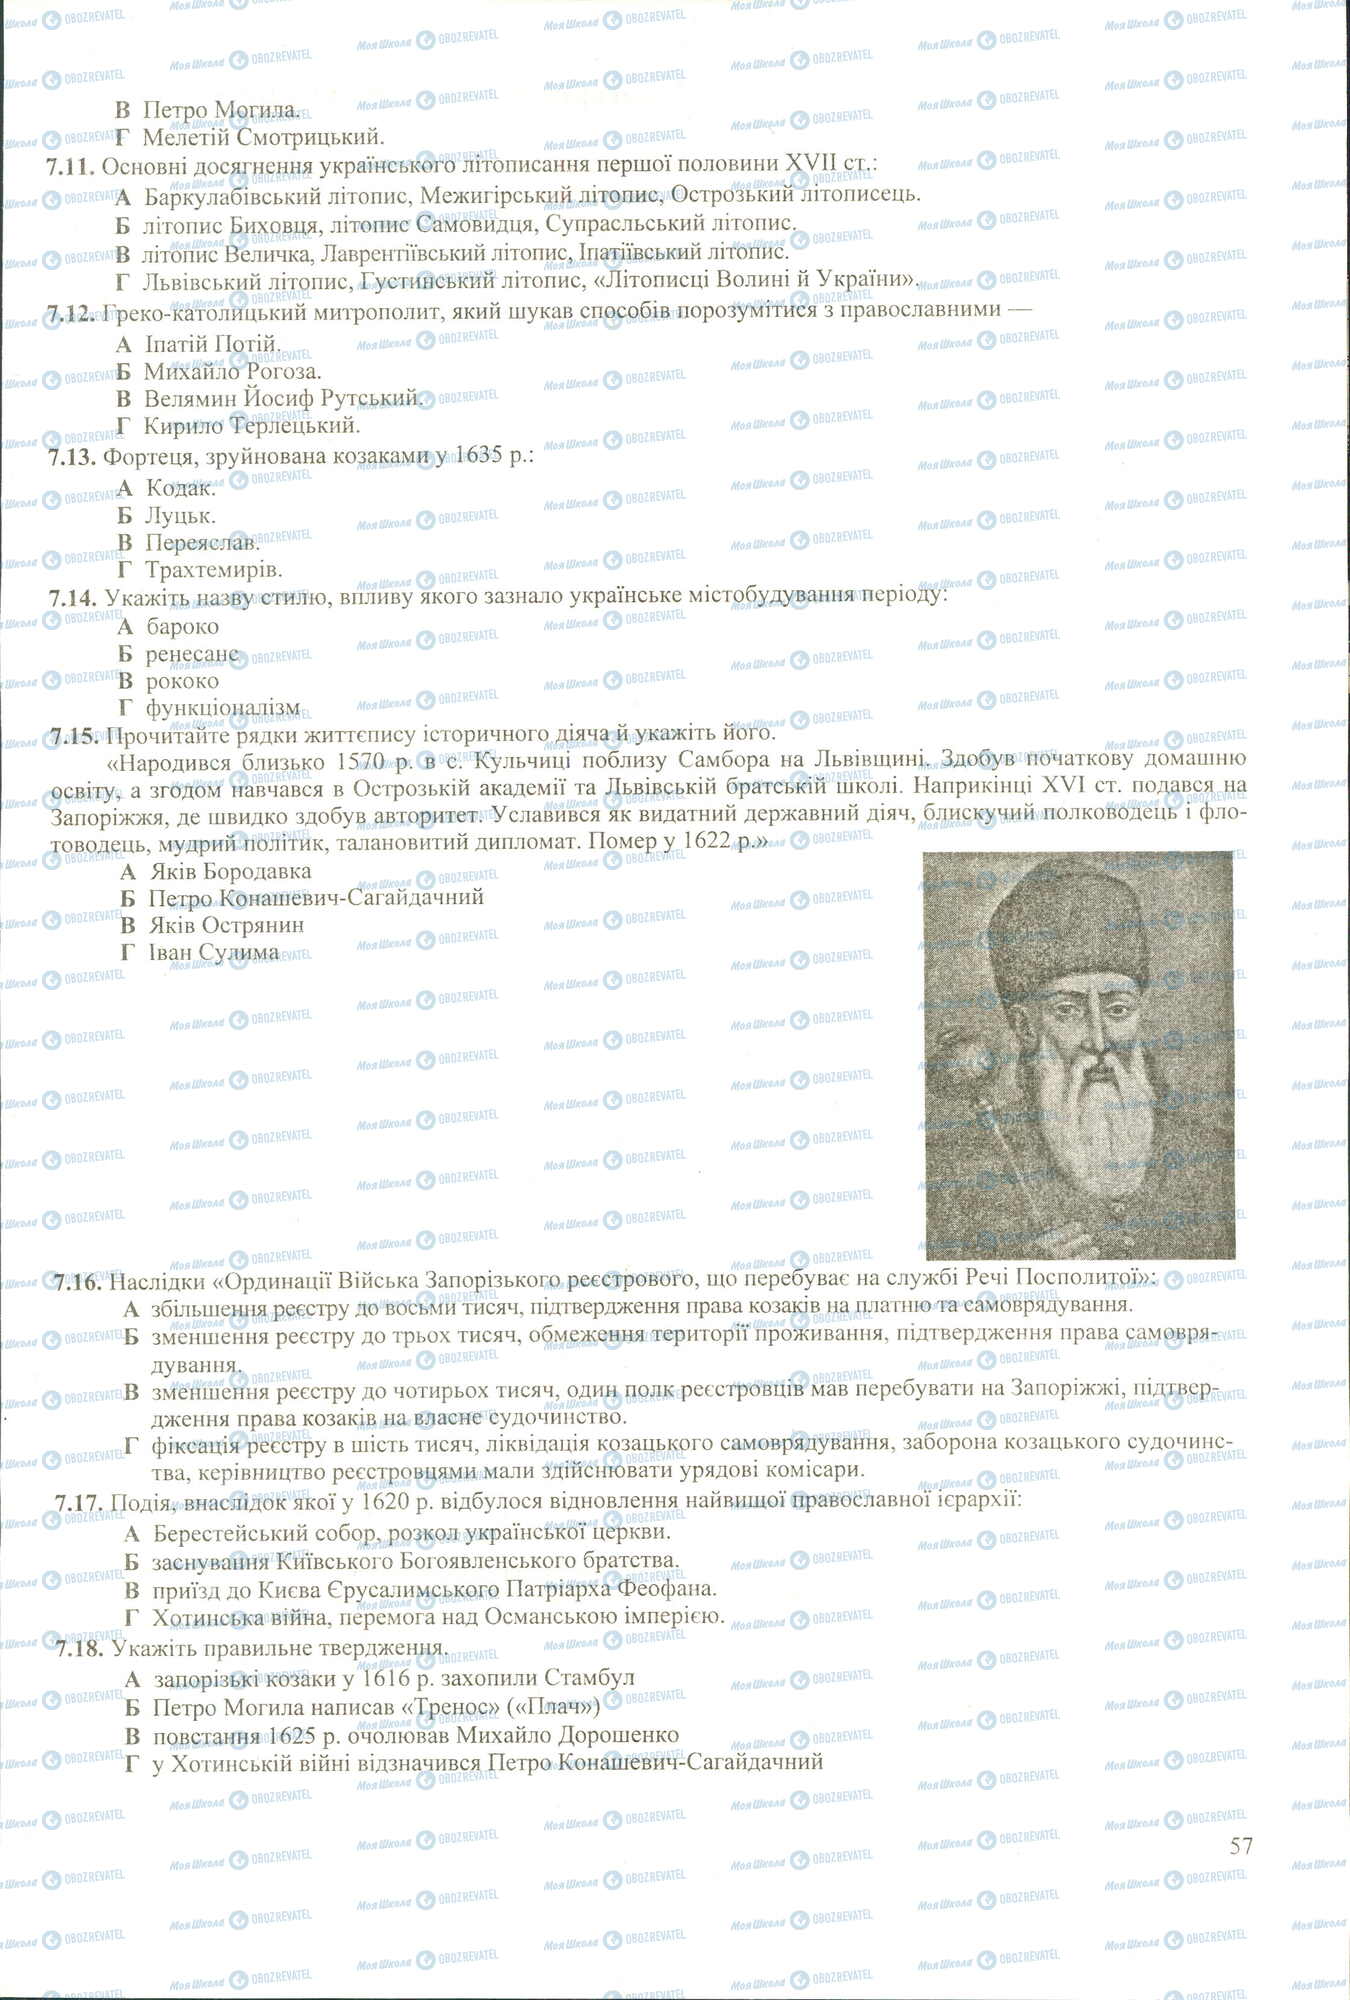 ЗНО История Украины 11 класс страница 7.11-7.18